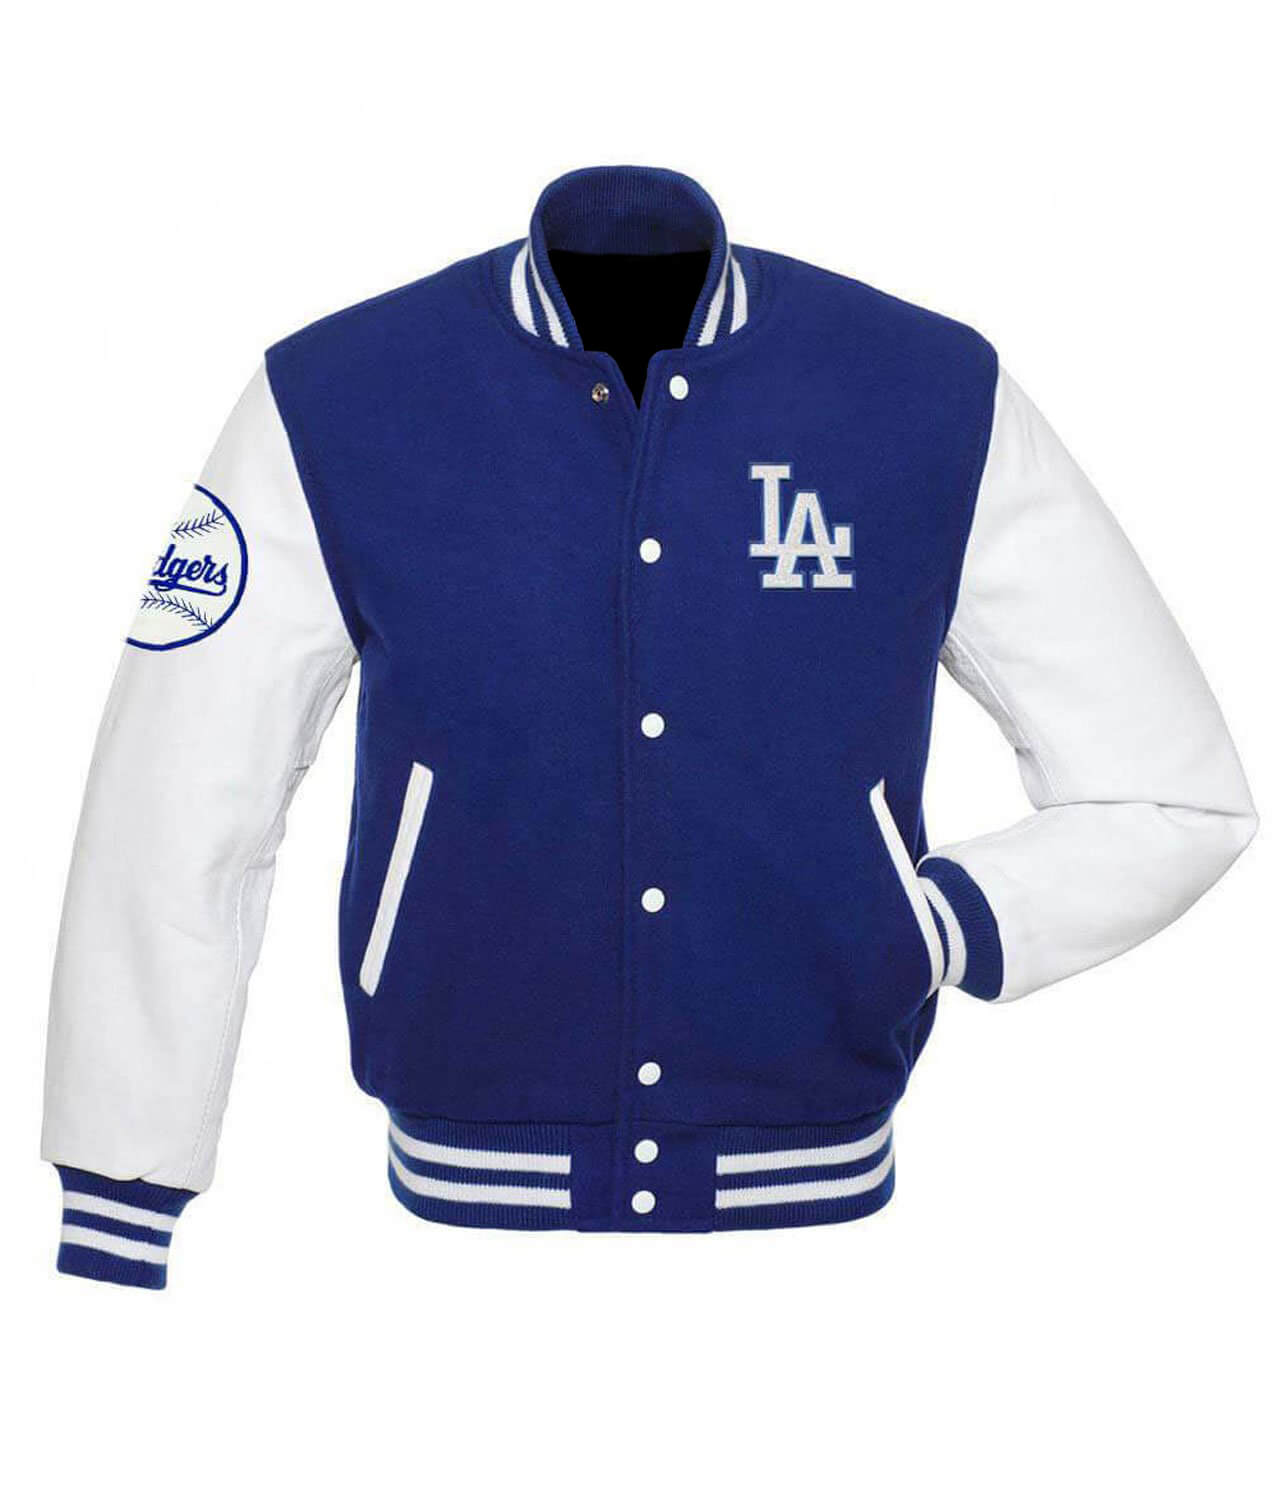 La Dodgers Blended Blue and White Letterman Jacket